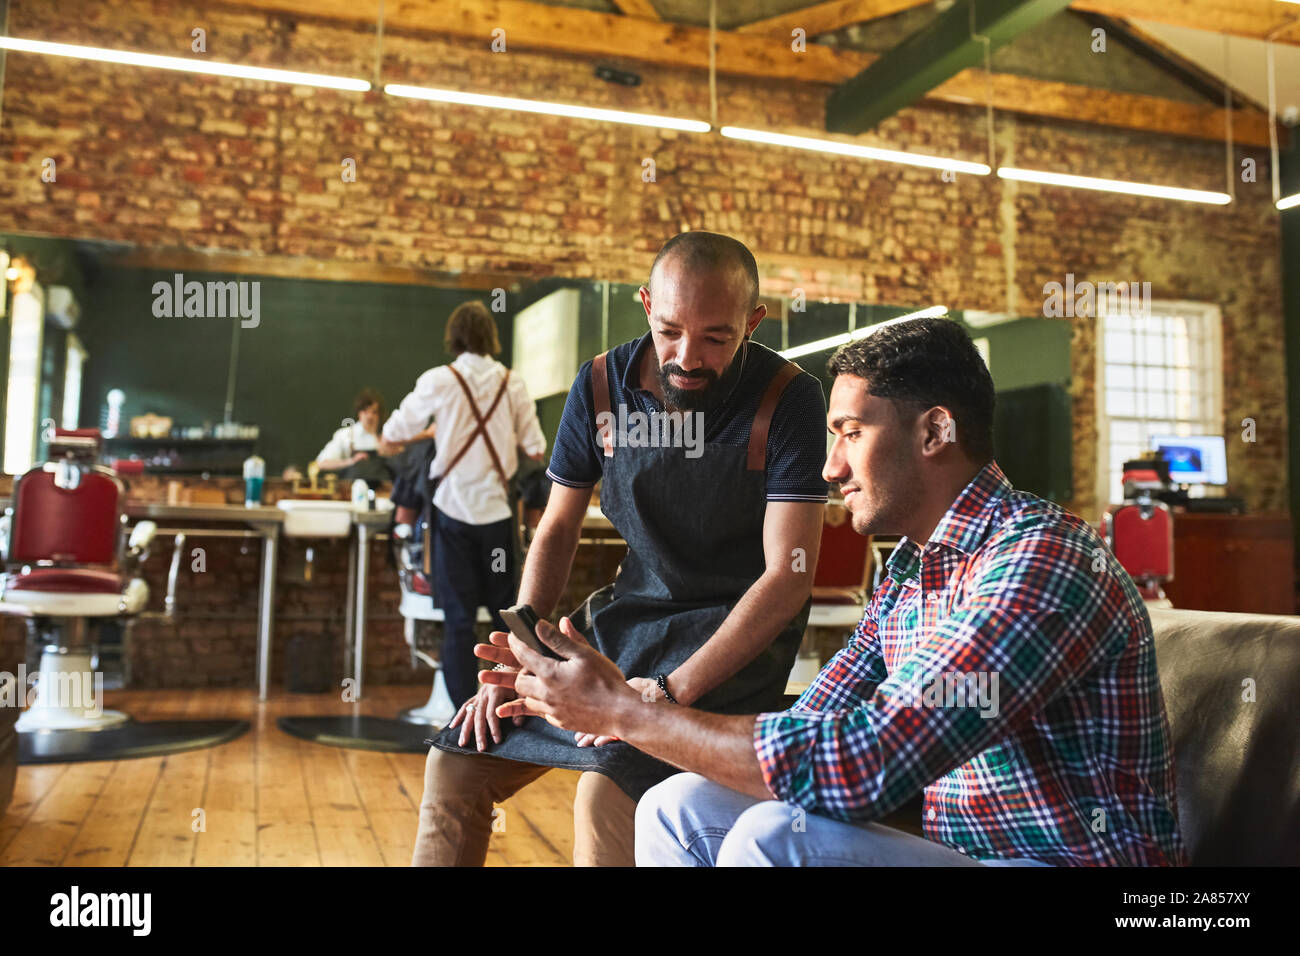 Salon de coiffure masculin et le client with digital tablet in barbershop Banque D'Images